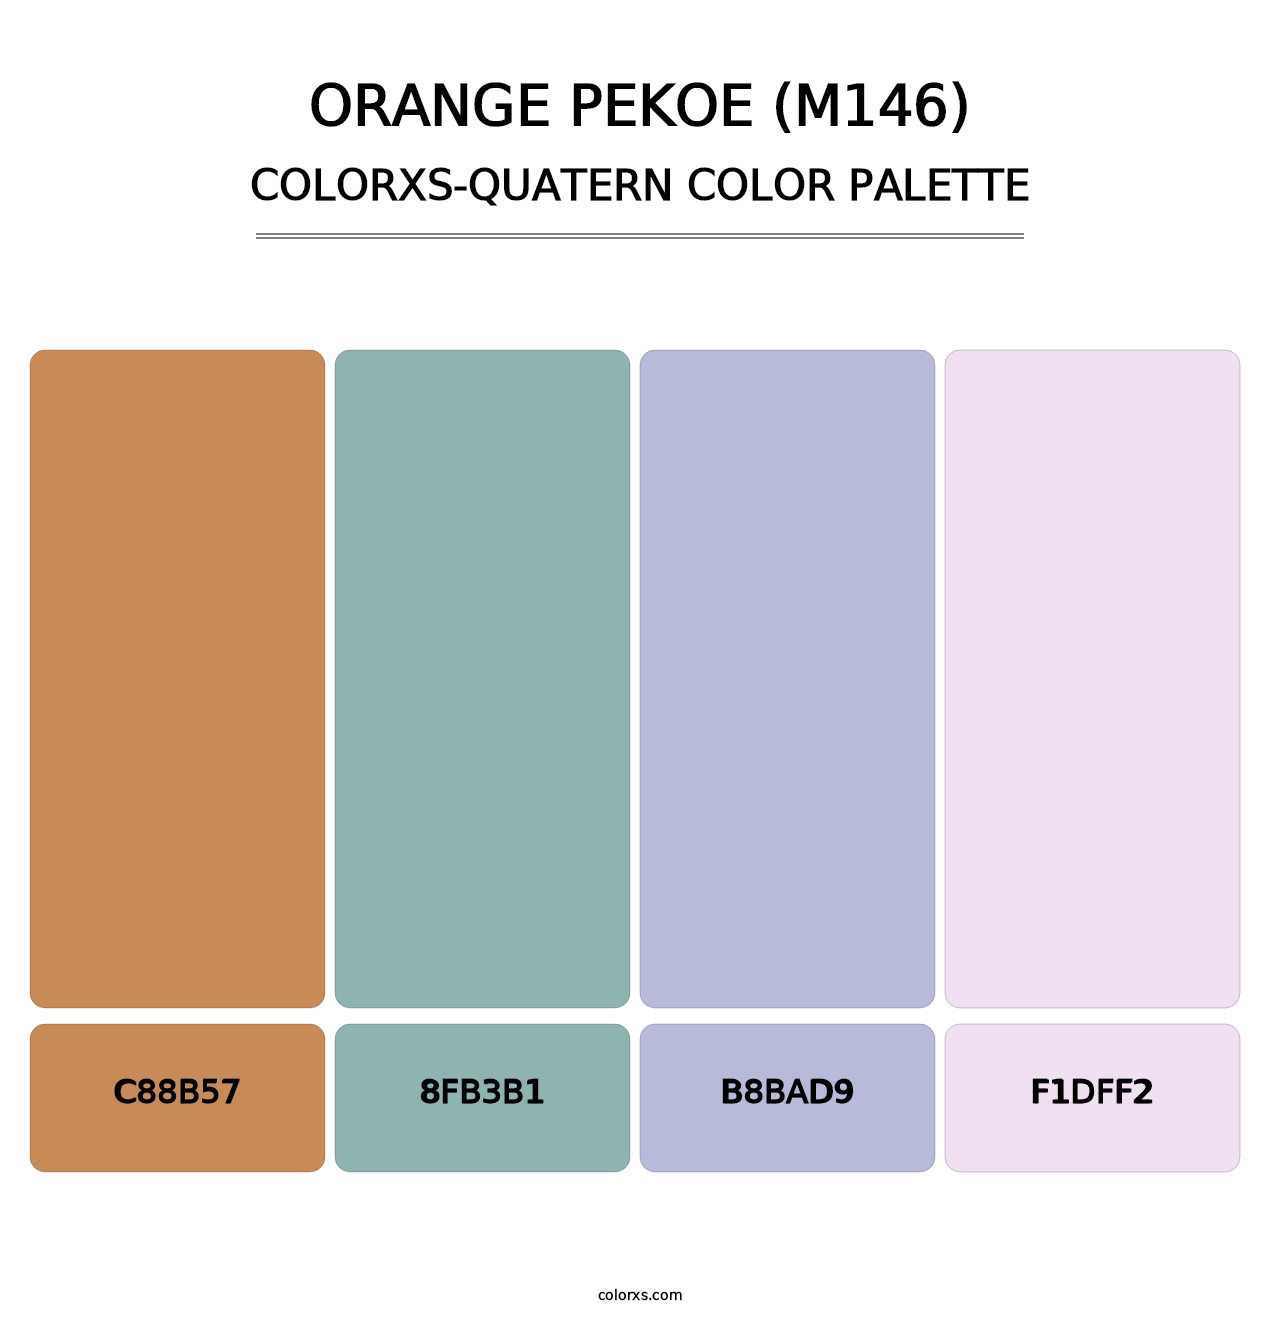 Orange Pekoe (M146) - Colorxs Quatern Palette